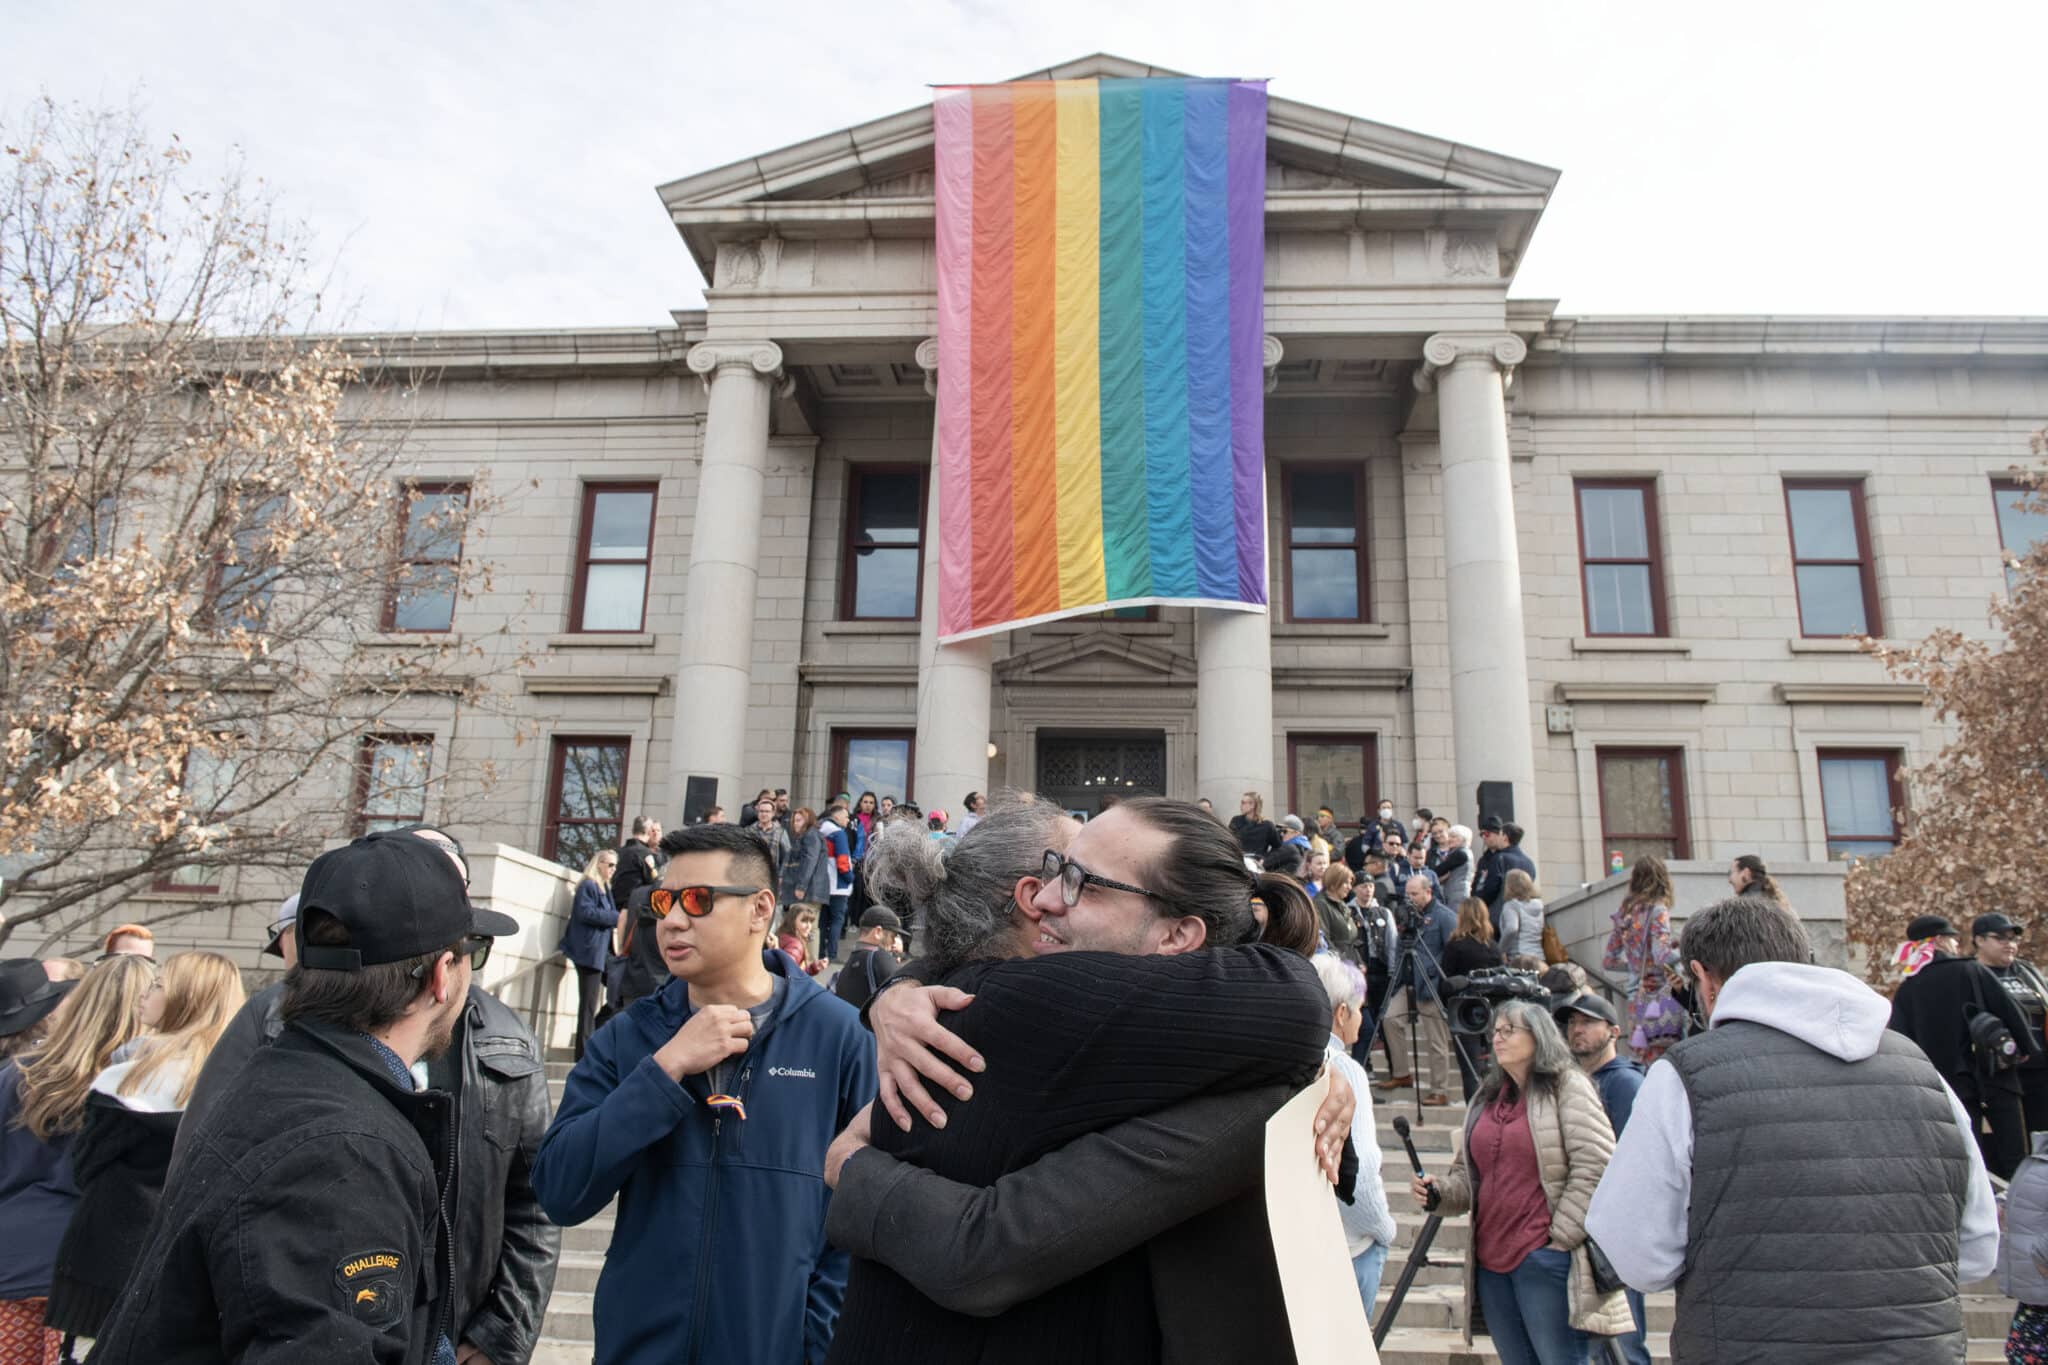 Colocan la bandera del Orgullo en el ayuntamiento de Colorado